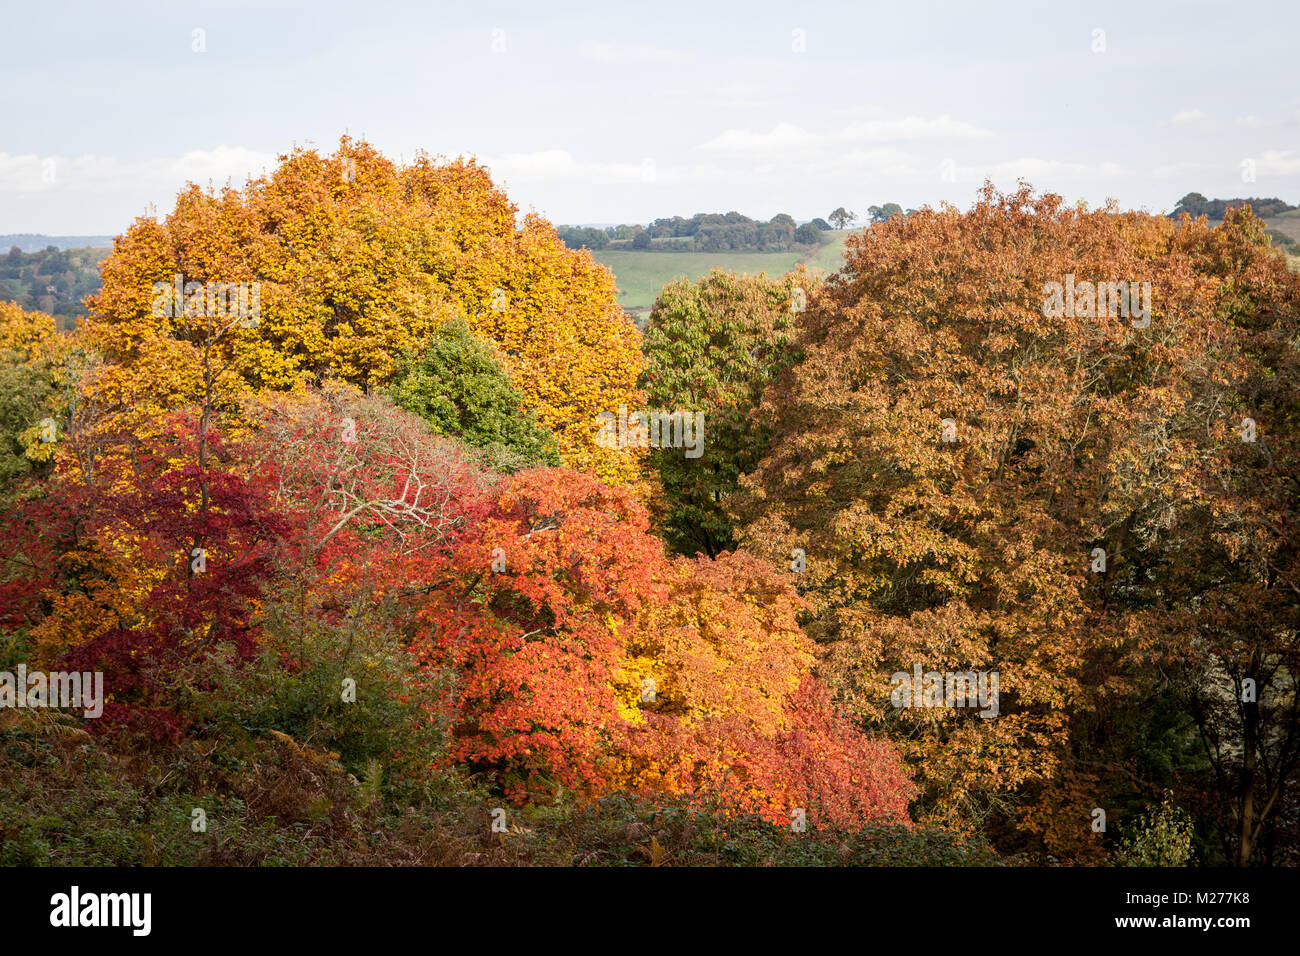 Autumn colours at Winkworth Arboretum in Surrey, UK. Stock Photo